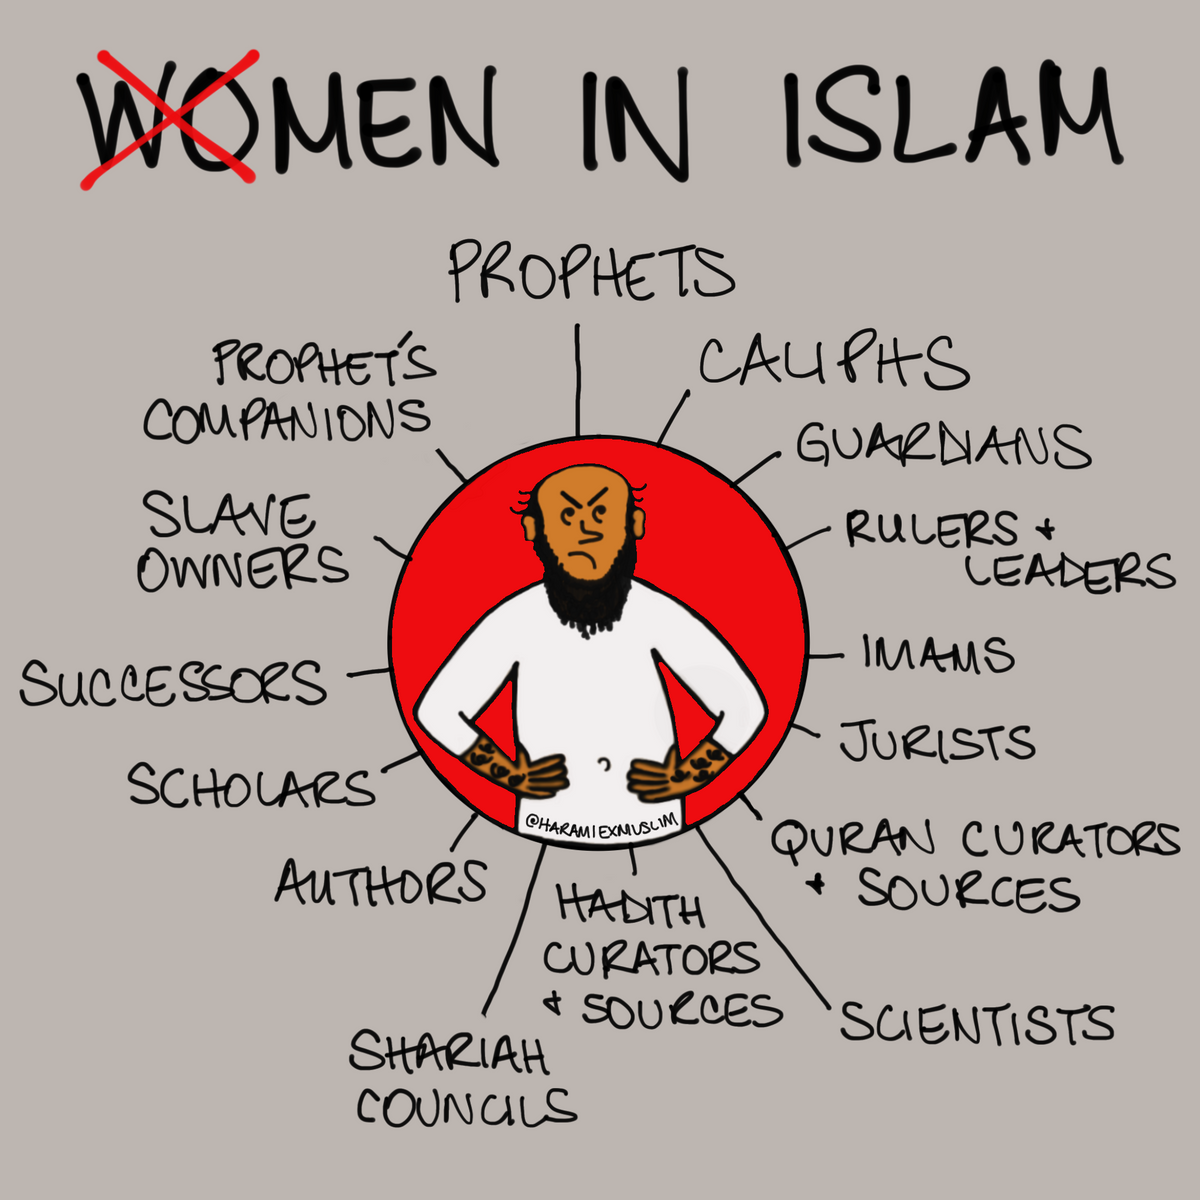 woMEN in Islam